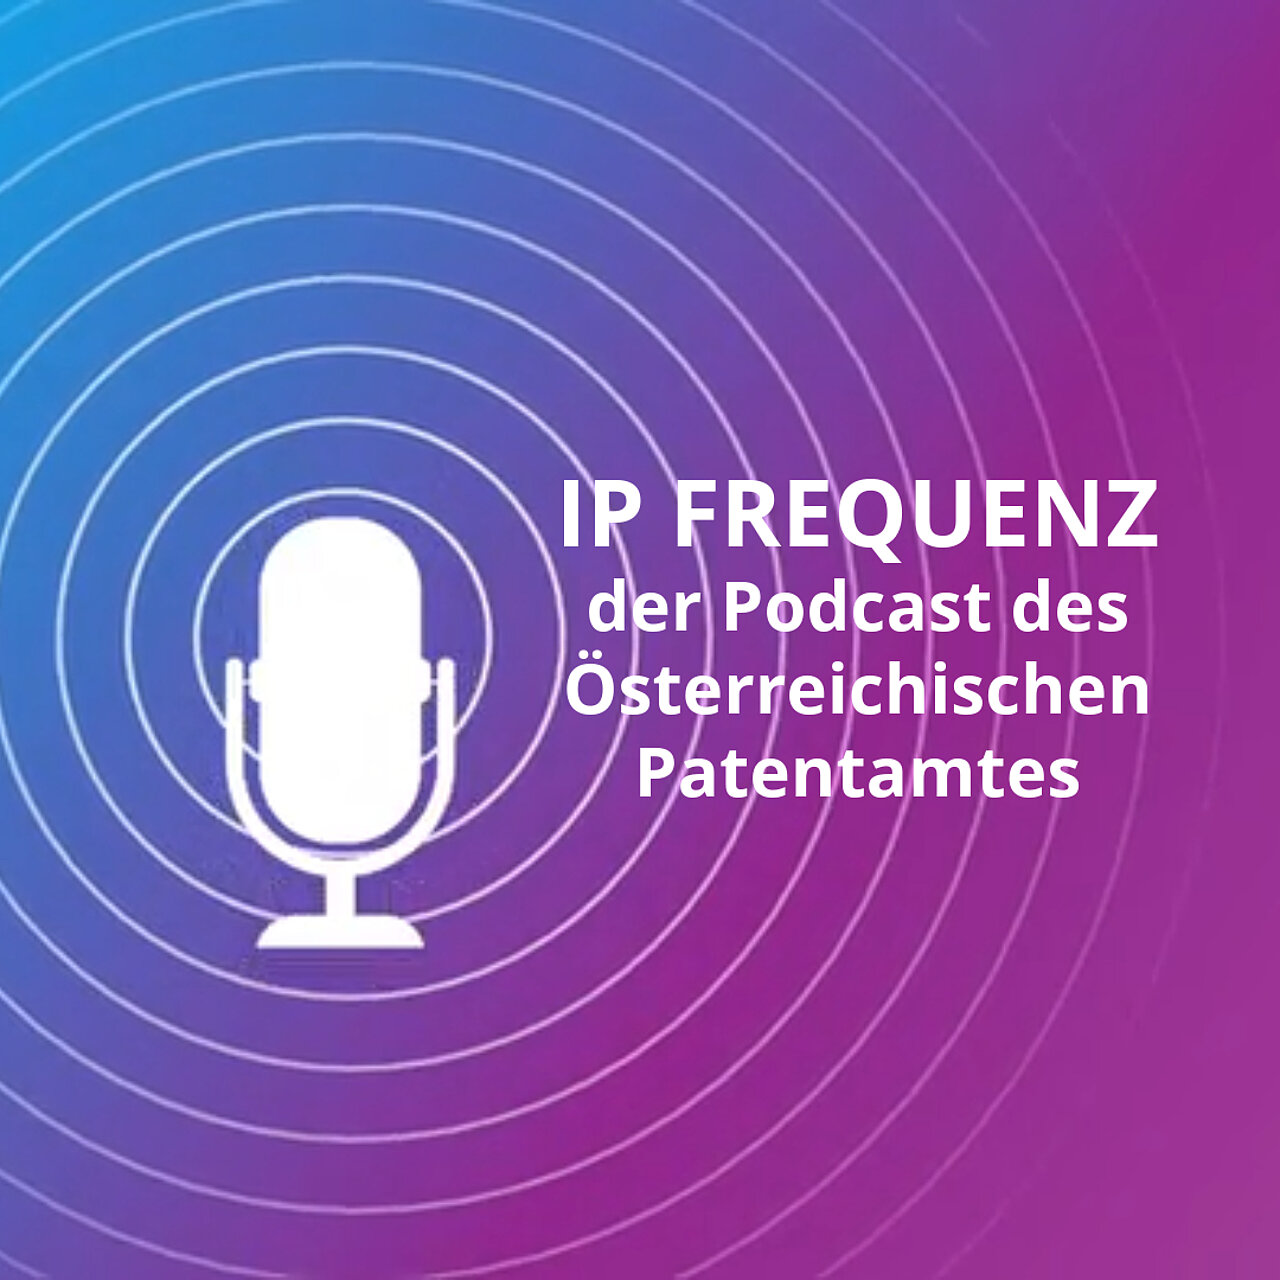 IP Frequenz - der Podcast des Österreichischen Patentamtes